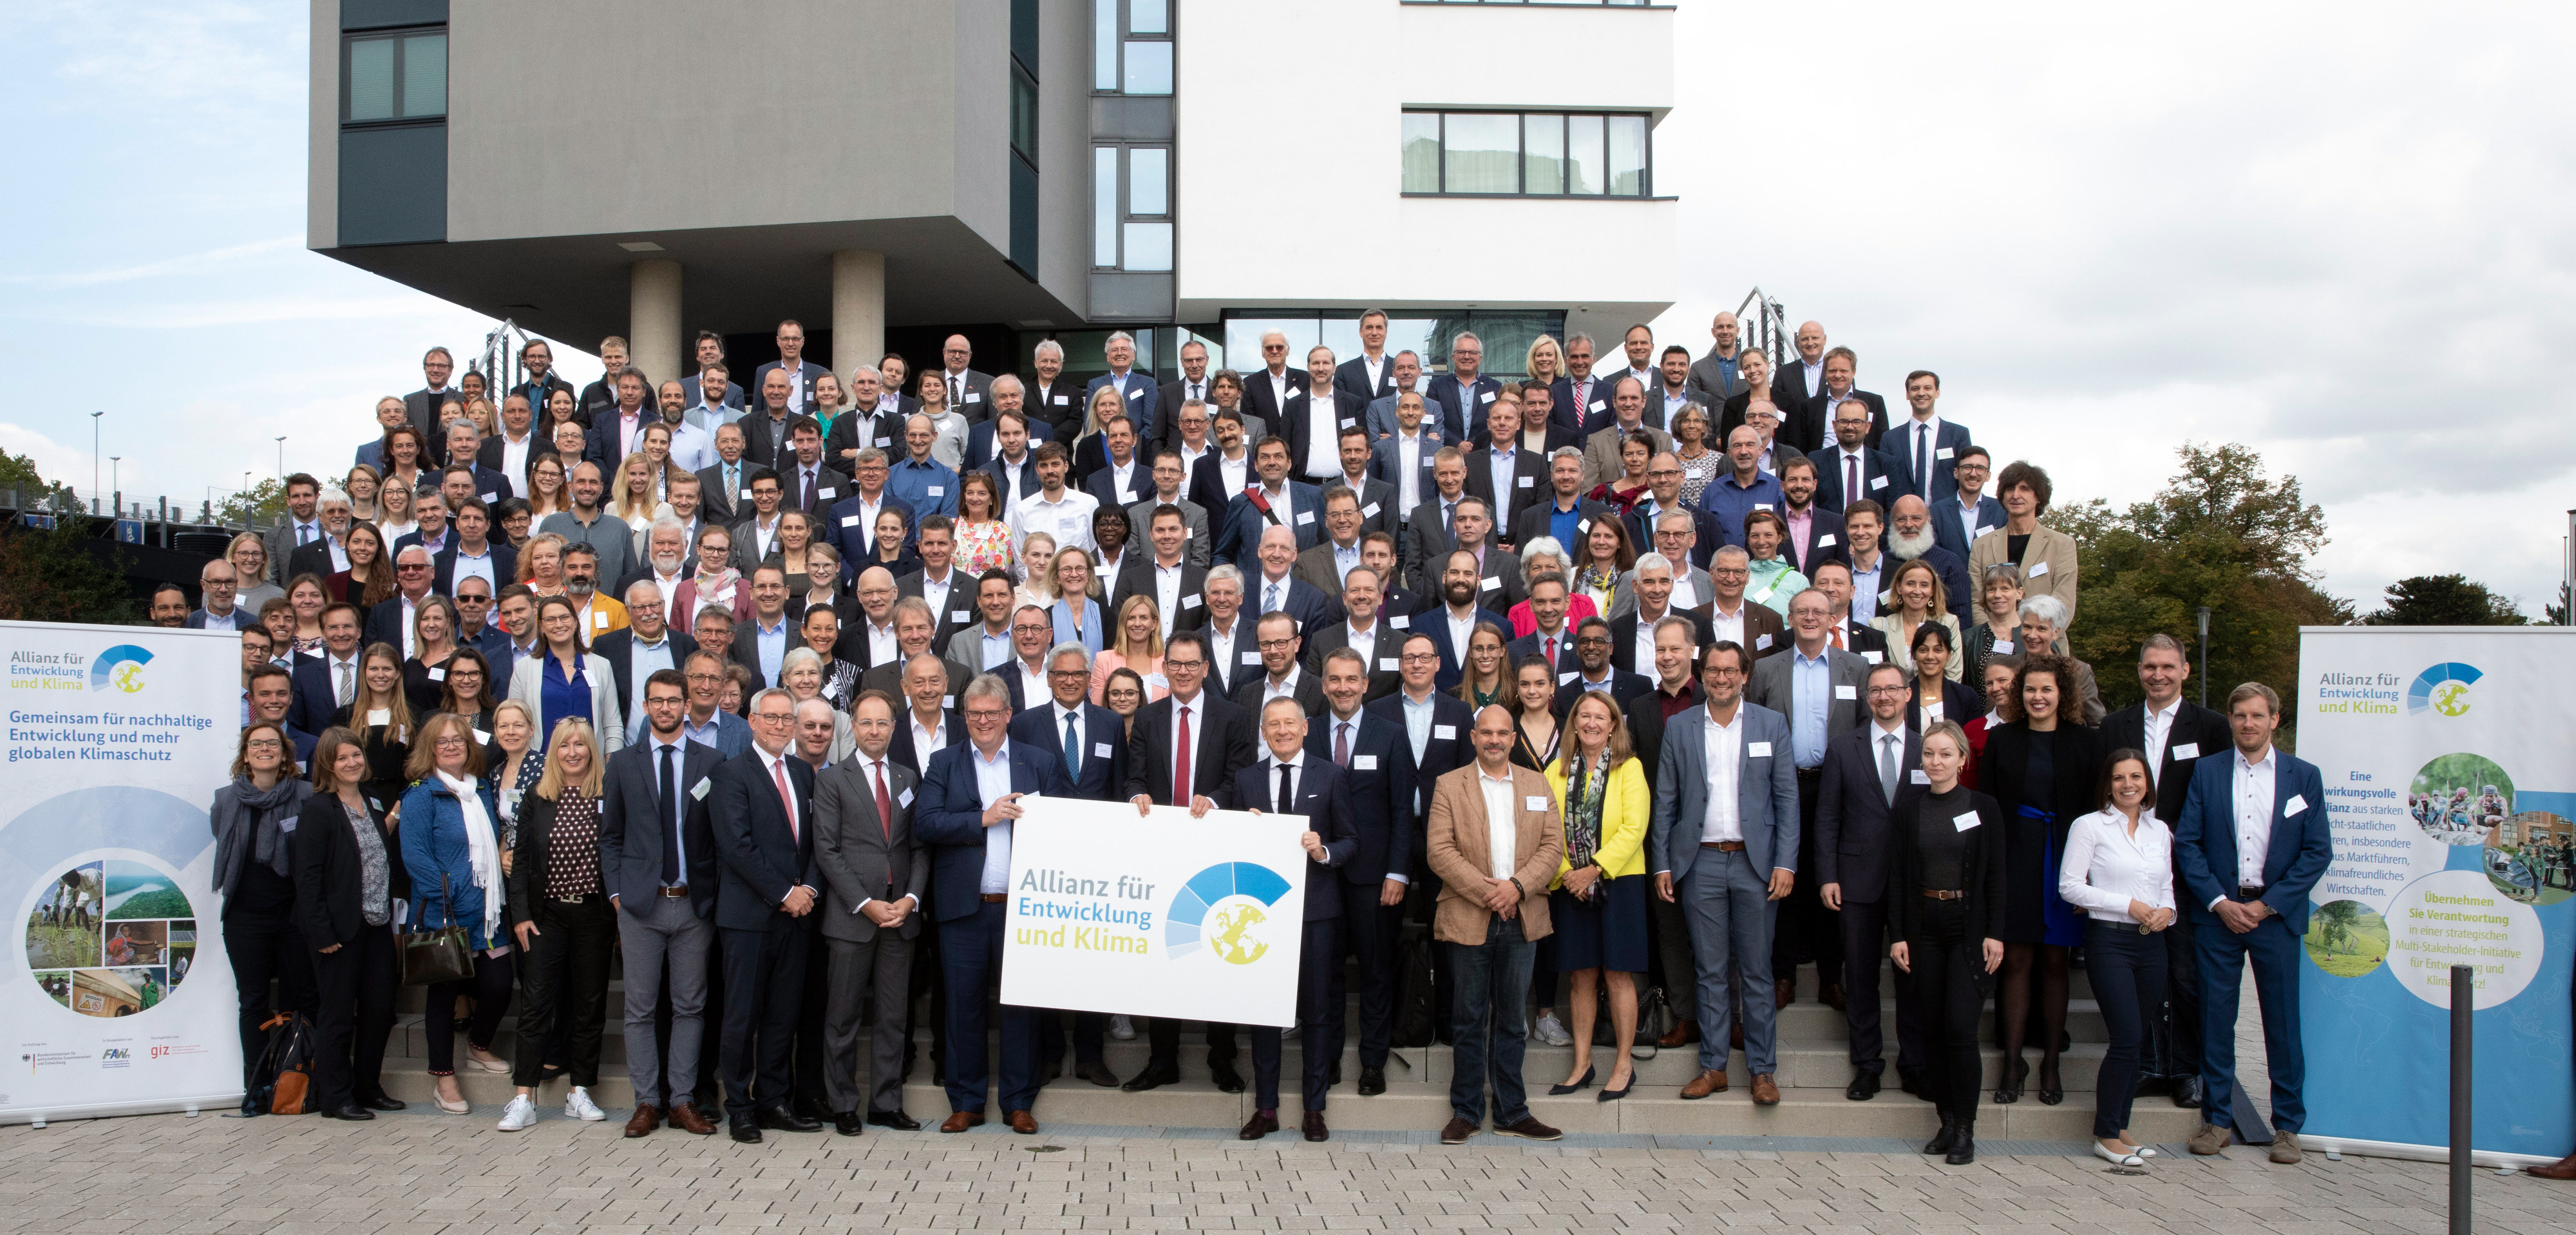 Gruppenbild: Treffen des Unterstützerkreises der Allianz für Entwicklung und Klima in Bonn am 17.09.2019